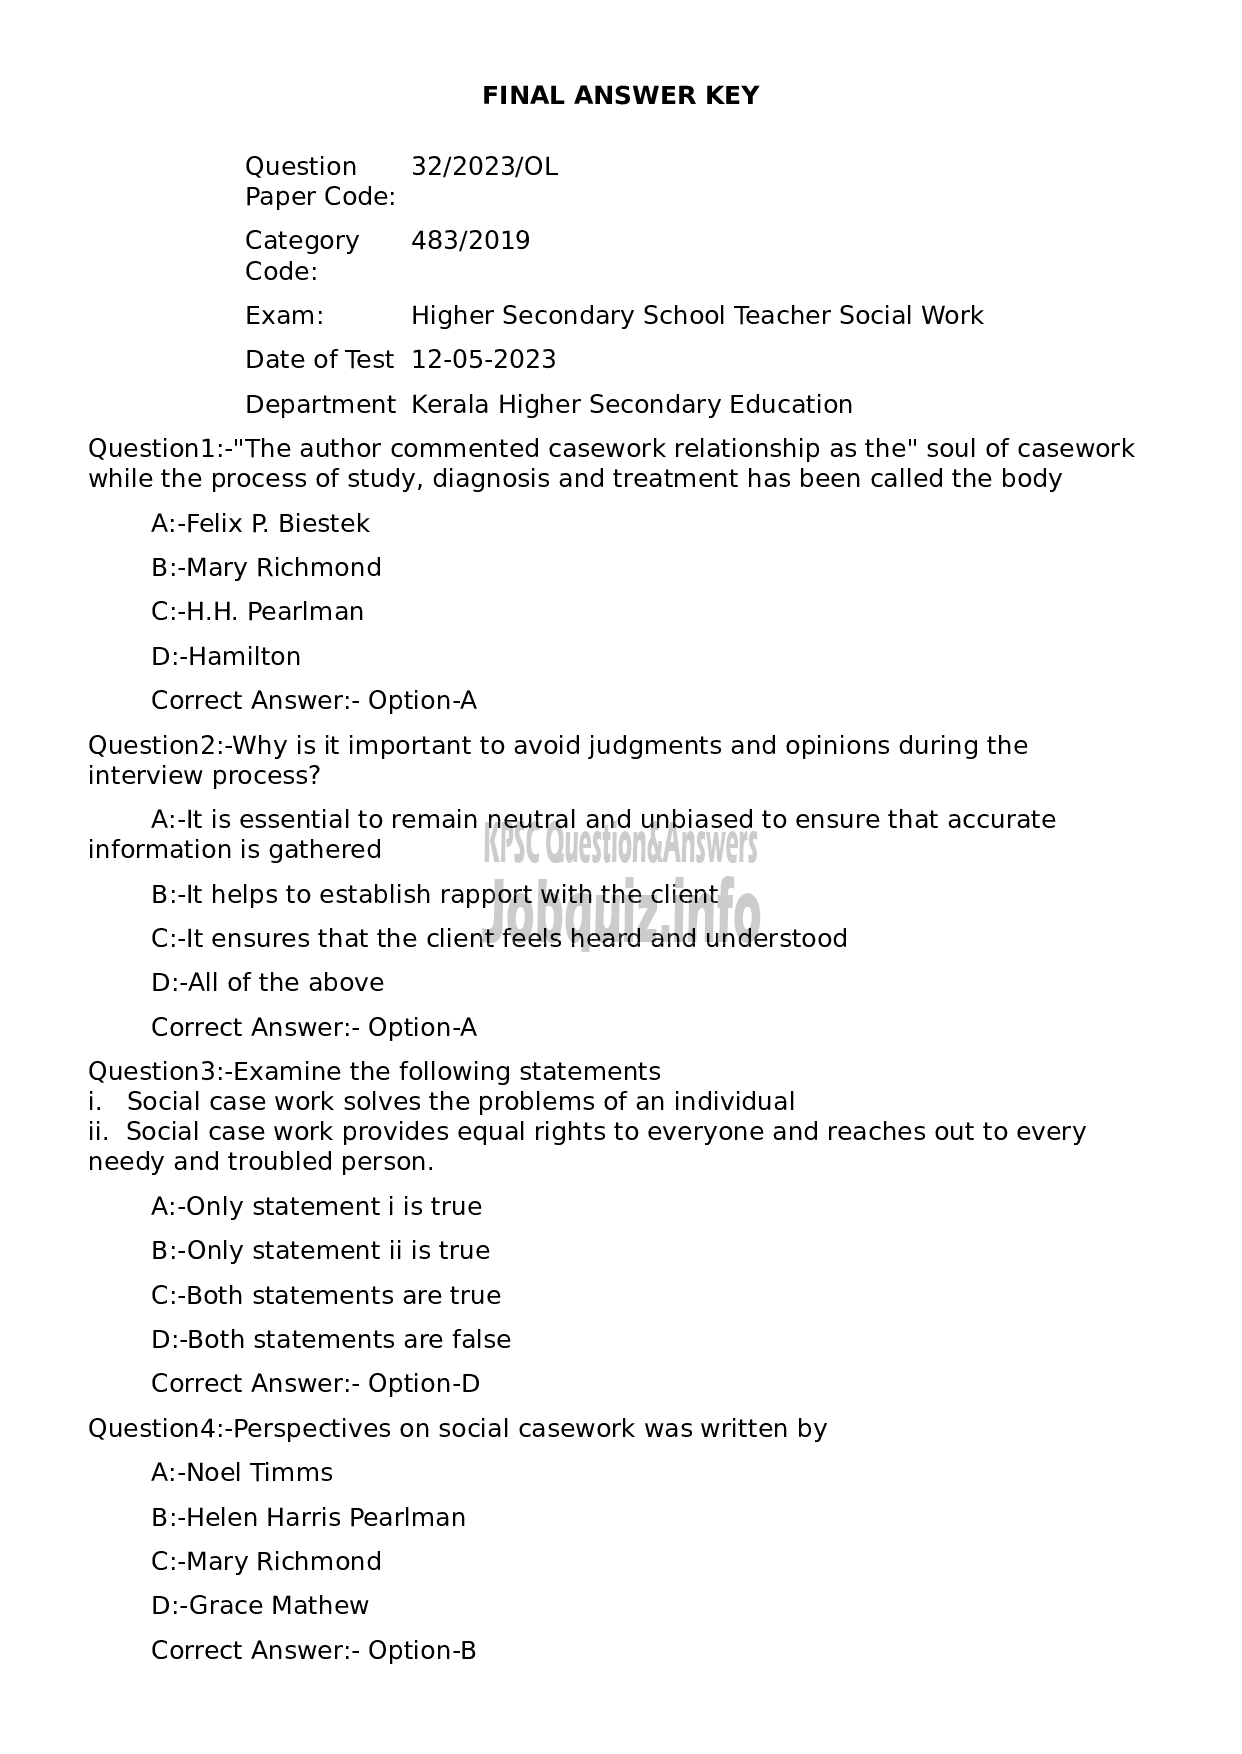 Kerala PSC Question Paper - Higher Secondary School Teacher Social Work-1